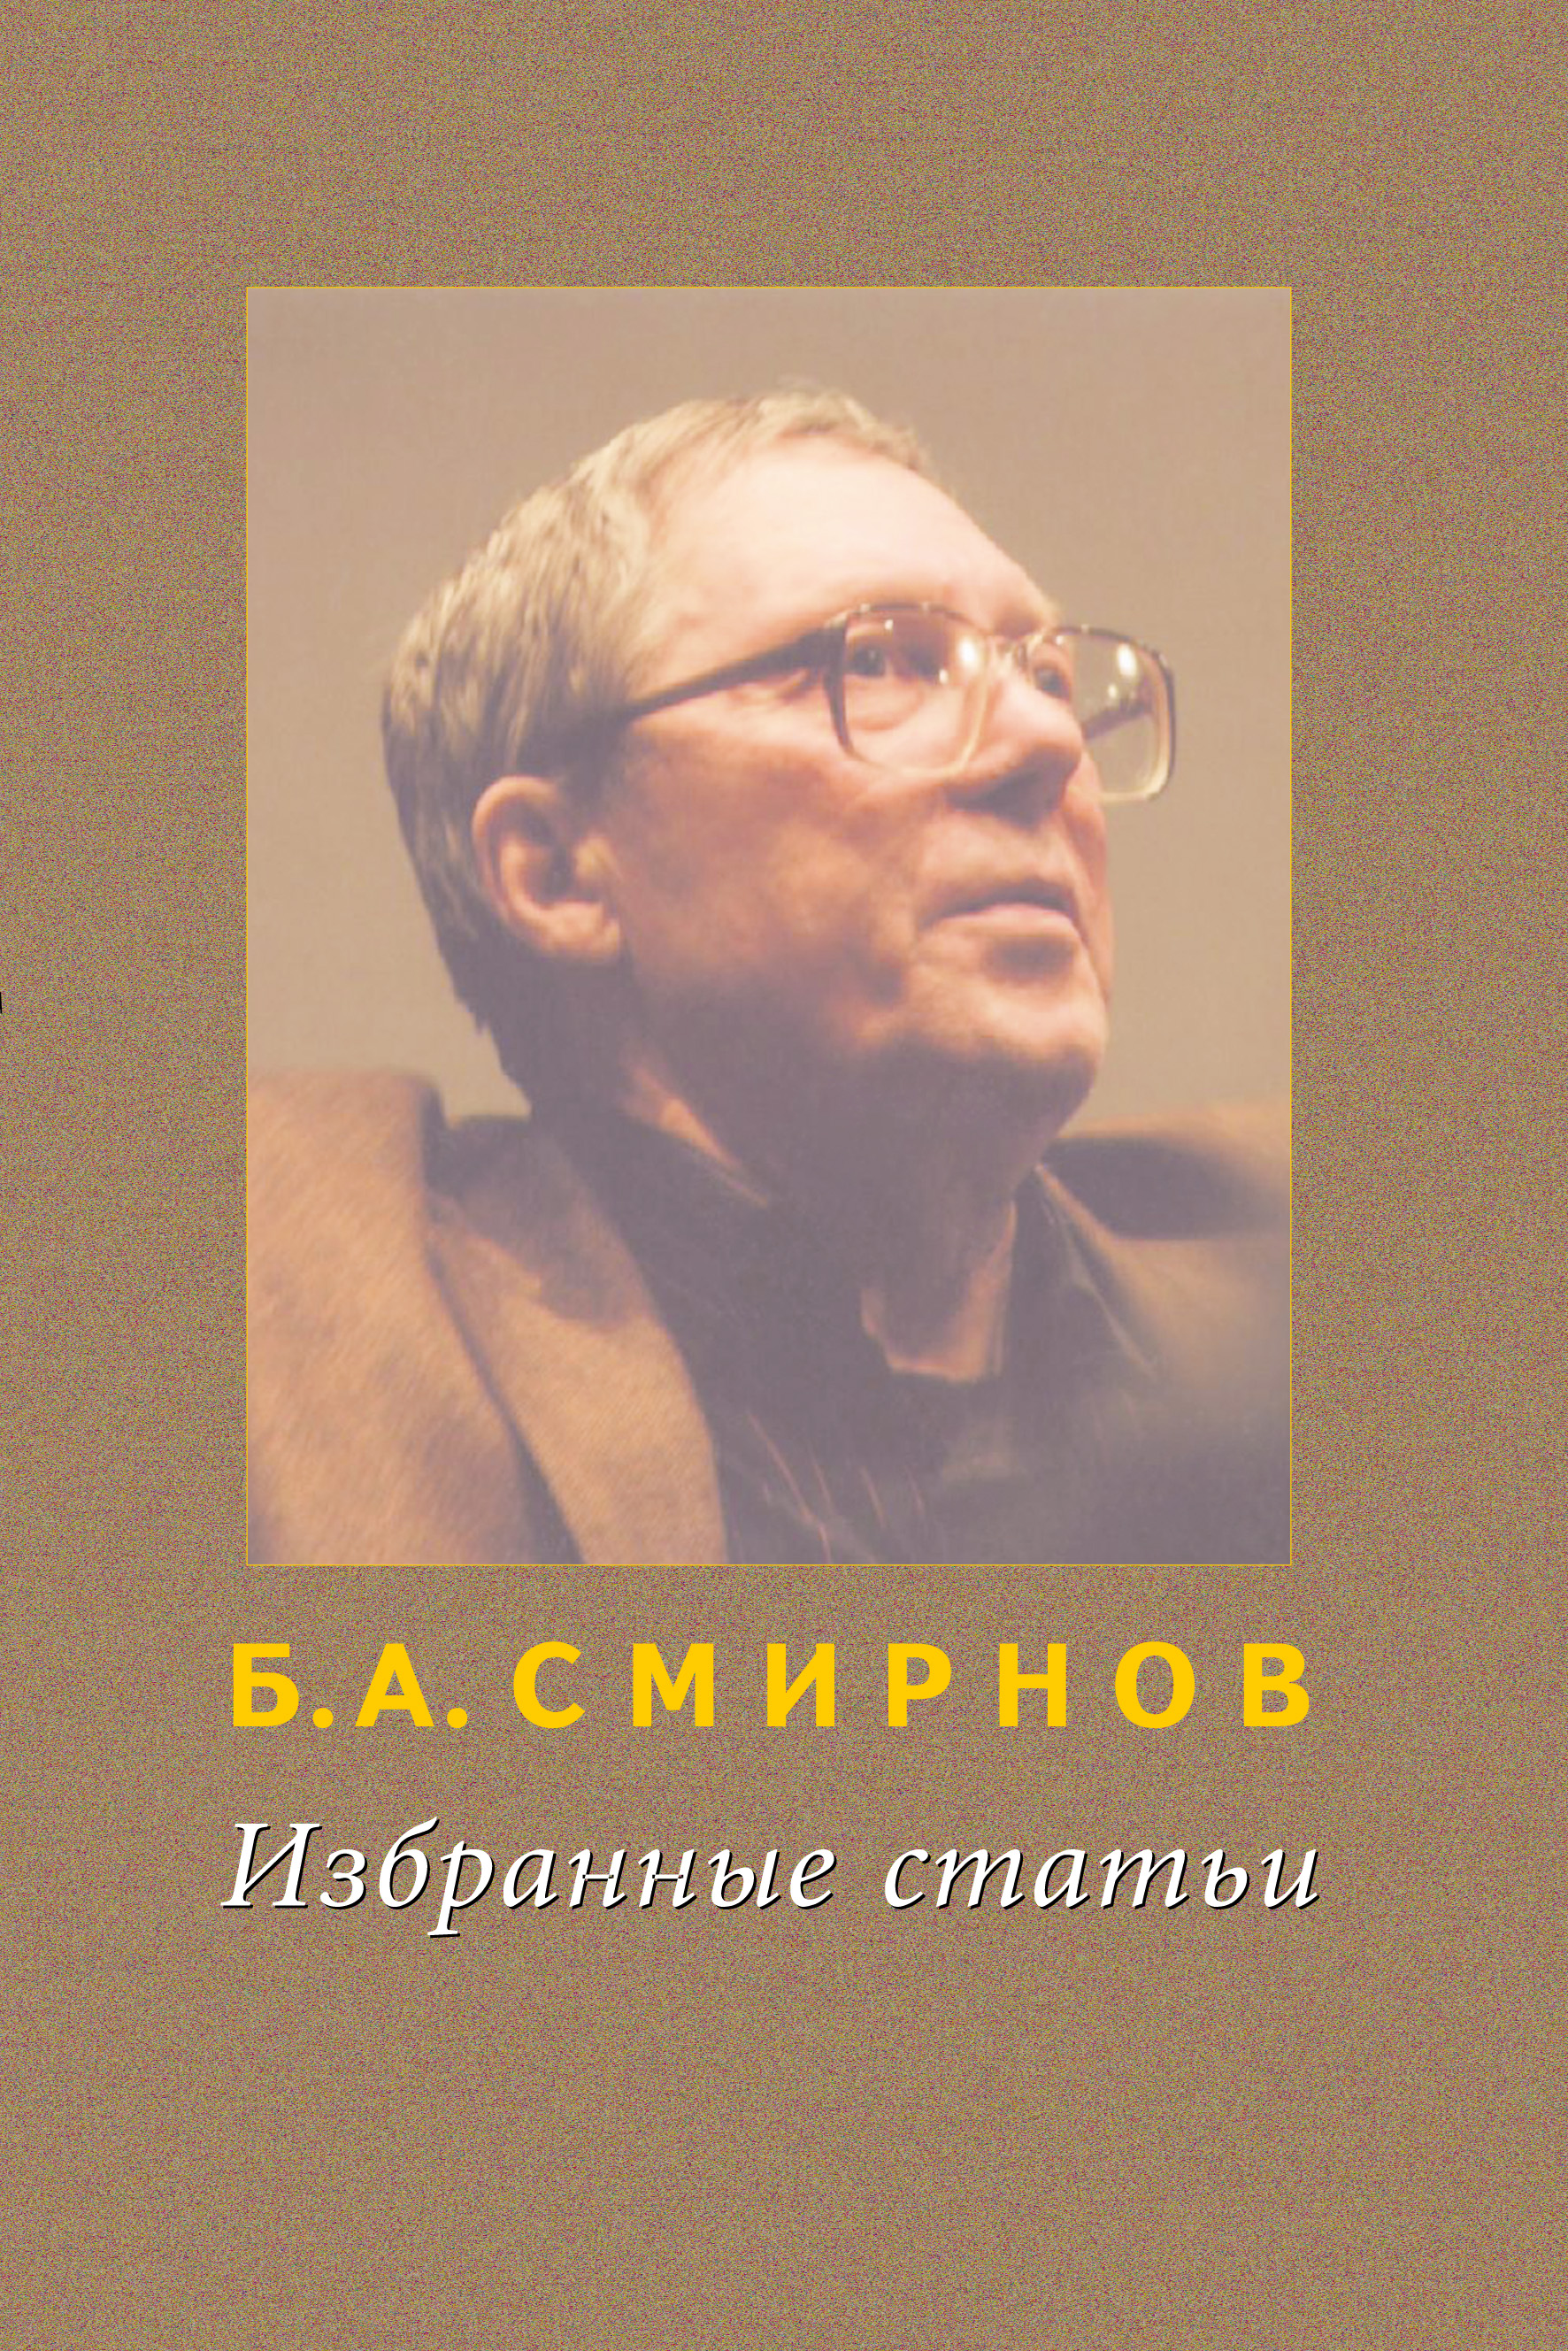 Книга Избранные статьи из серии , созданная Борис Смирнов, может относится к жанру Кинематограф, театр. Стоимость книги Избранные статьи  с идентификатором 33730814 составляет 80.00 руб.